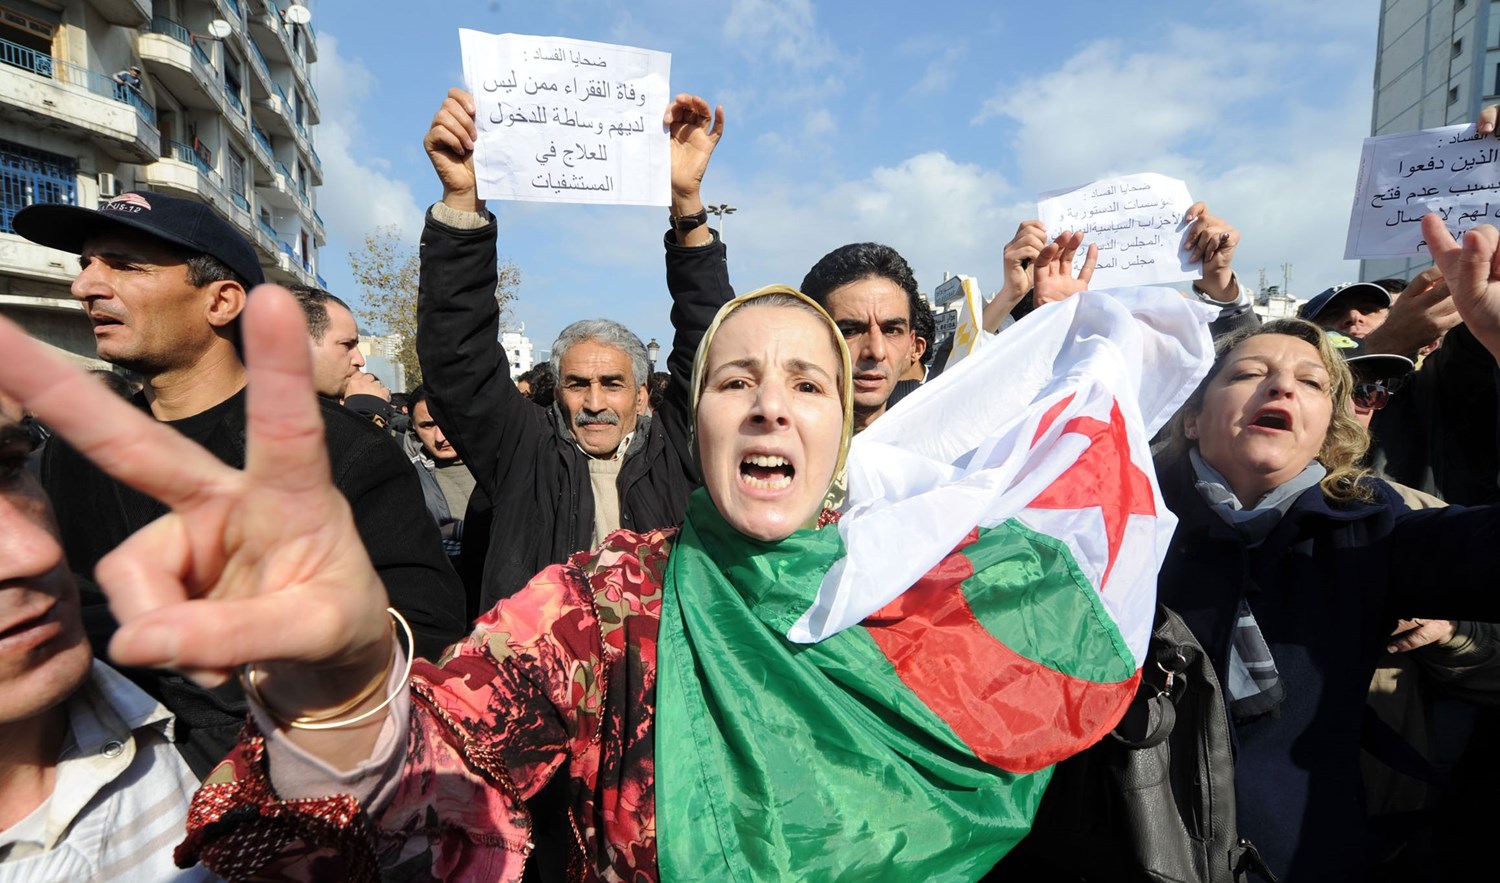 حزب جزائري يستنكر تجريم العمل السياسي و”حرب” النظام ضد الشعب